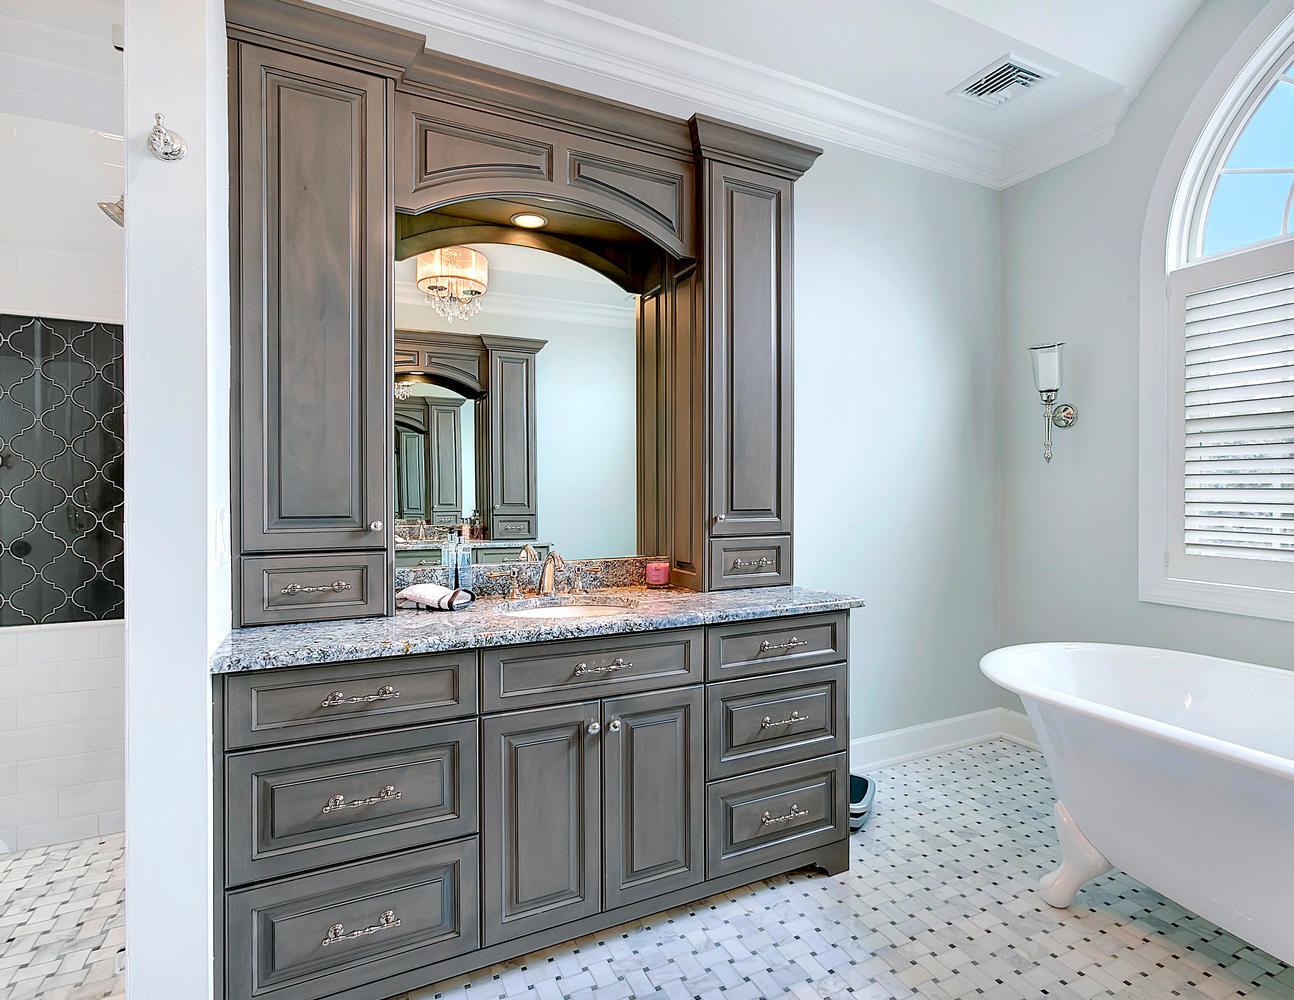 Best ideas about Custom Bathroom Vanities
. Save or Pin Custom Vanity Bathroom Cabinetry Now.